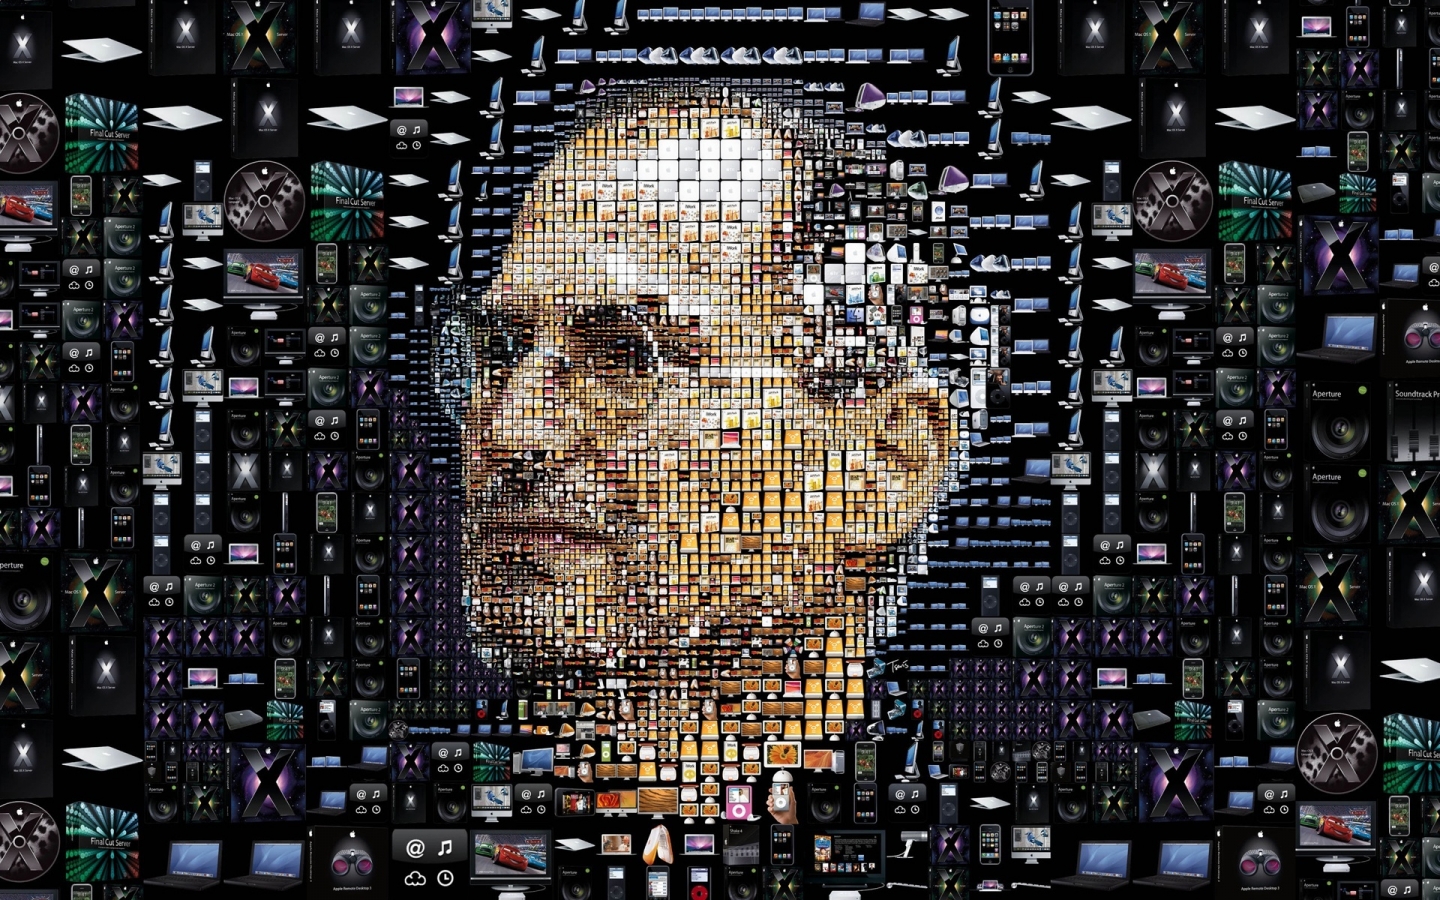 Steve Jobs for 1440 x 900 widescreen resolution